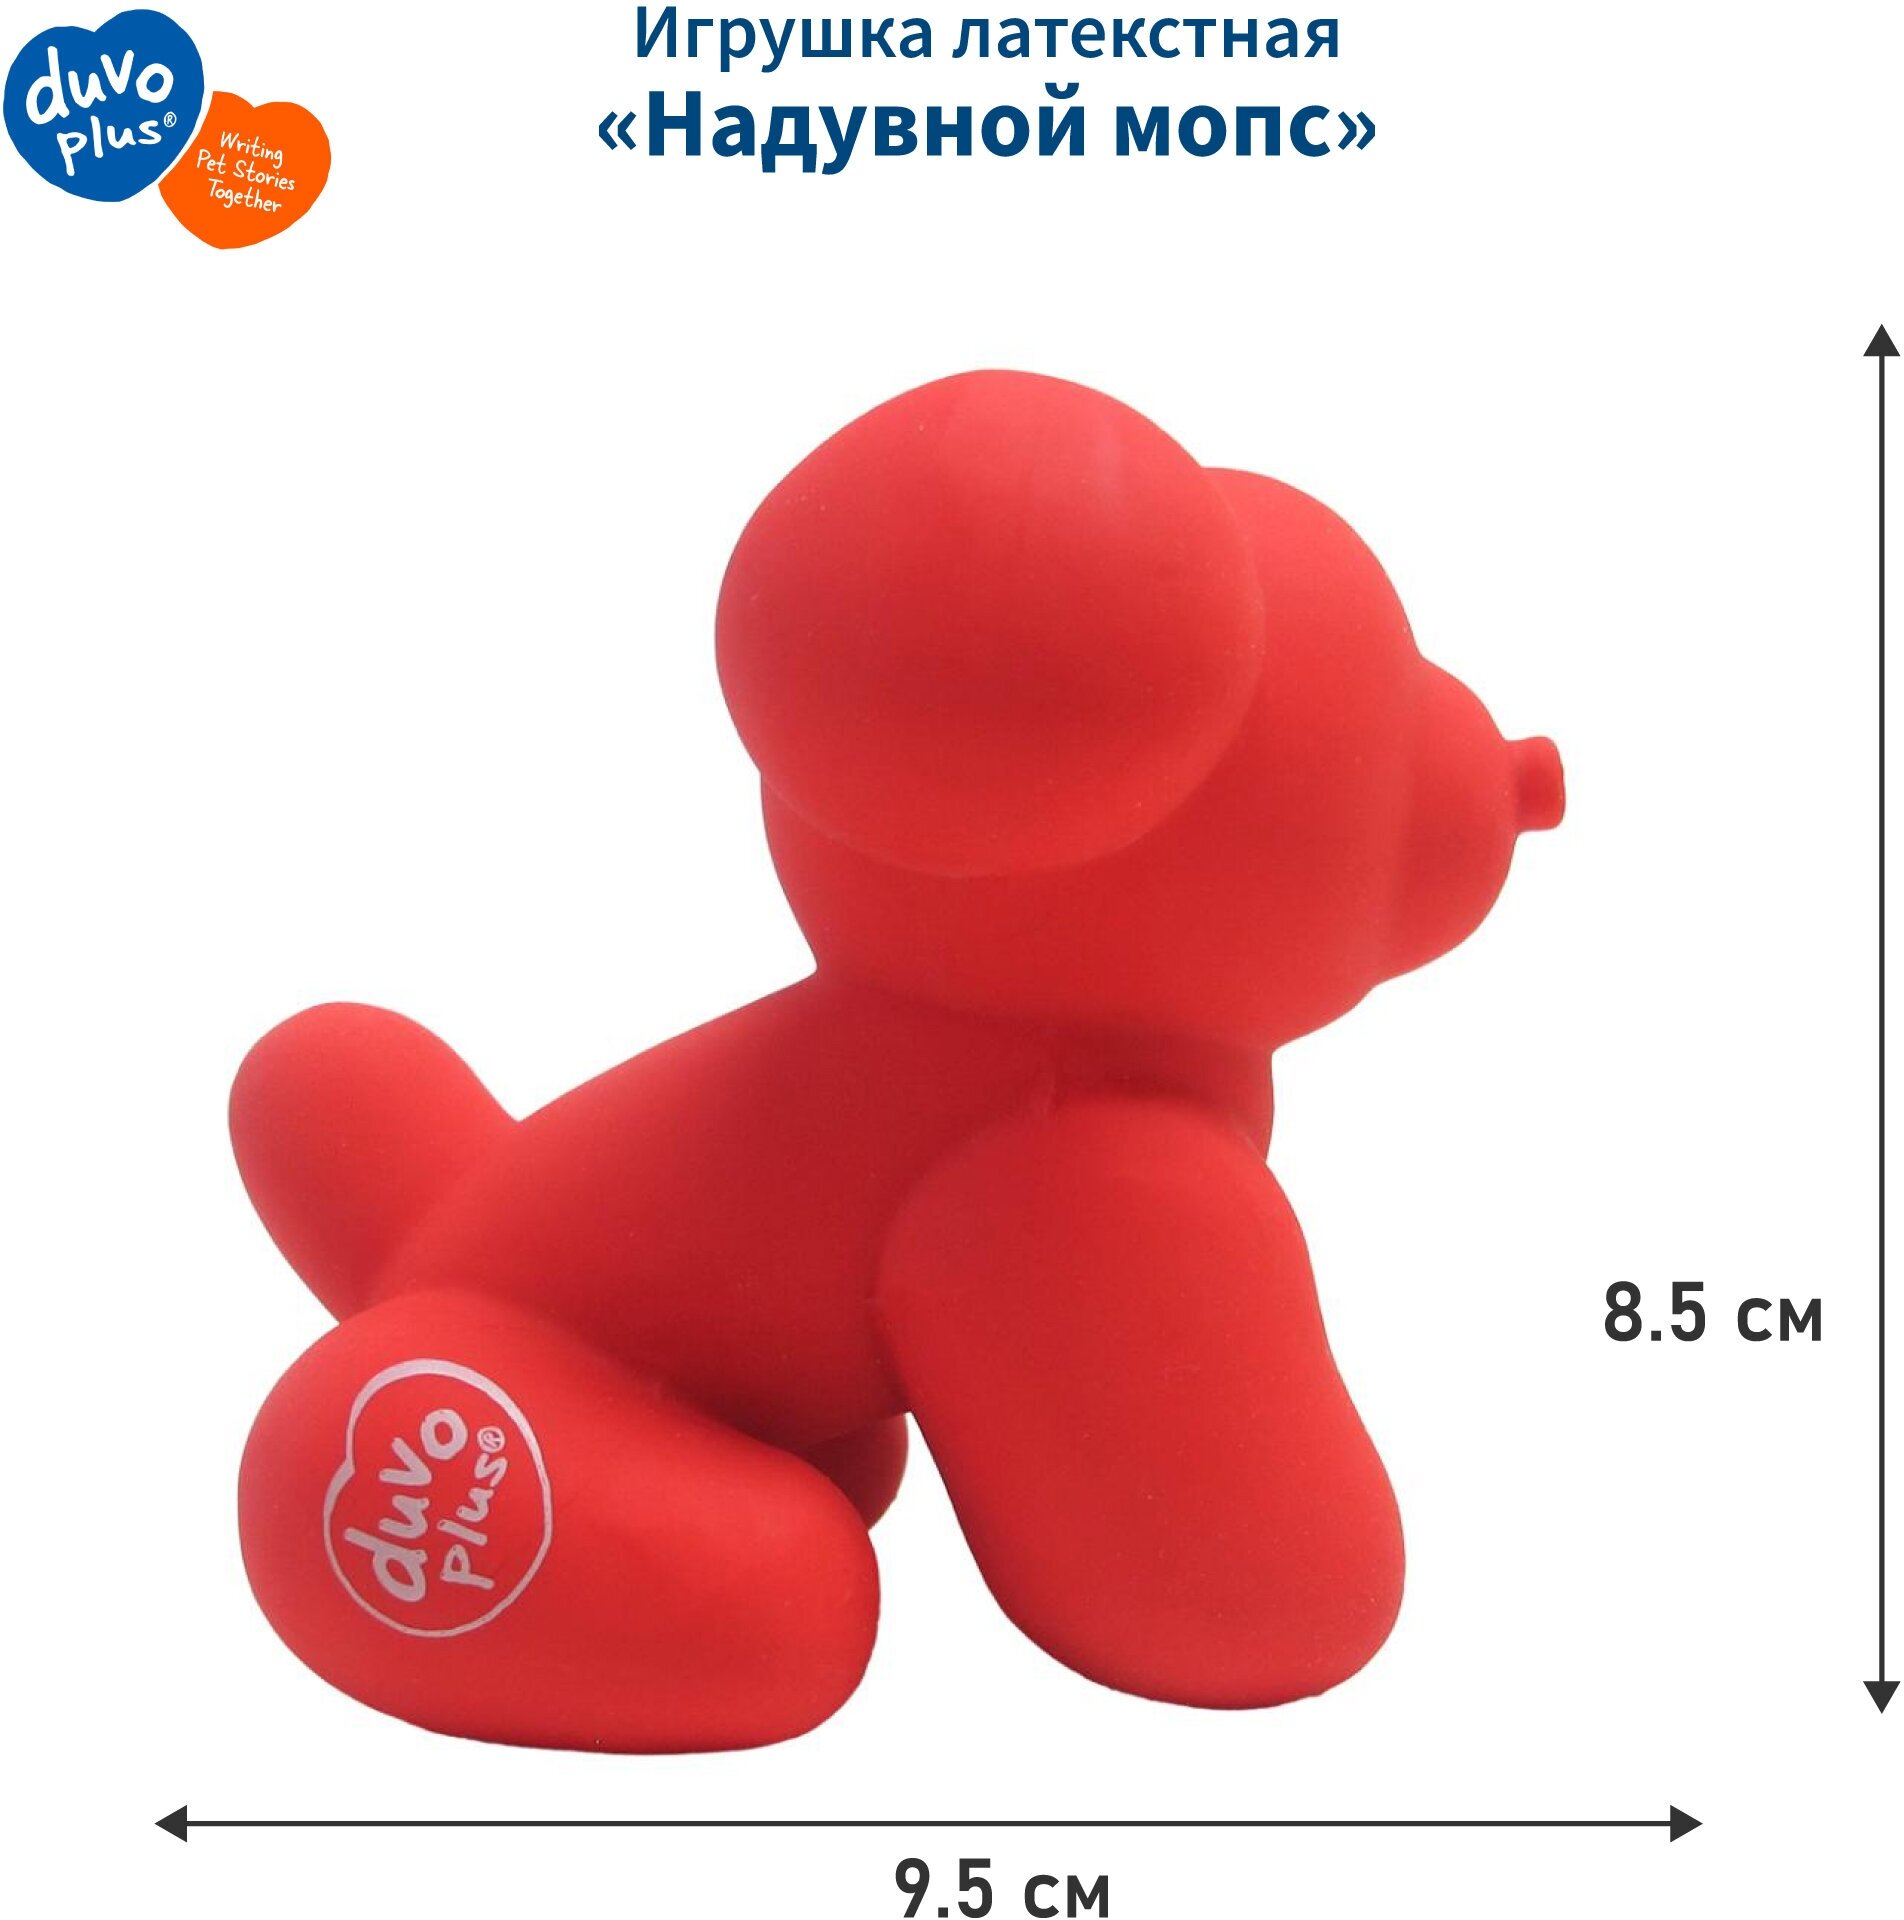 DUVO+ Игрушка для собак латексная "Надувной мопс", красная, 9.5x6x8.5см (Бельгия) - фото №1